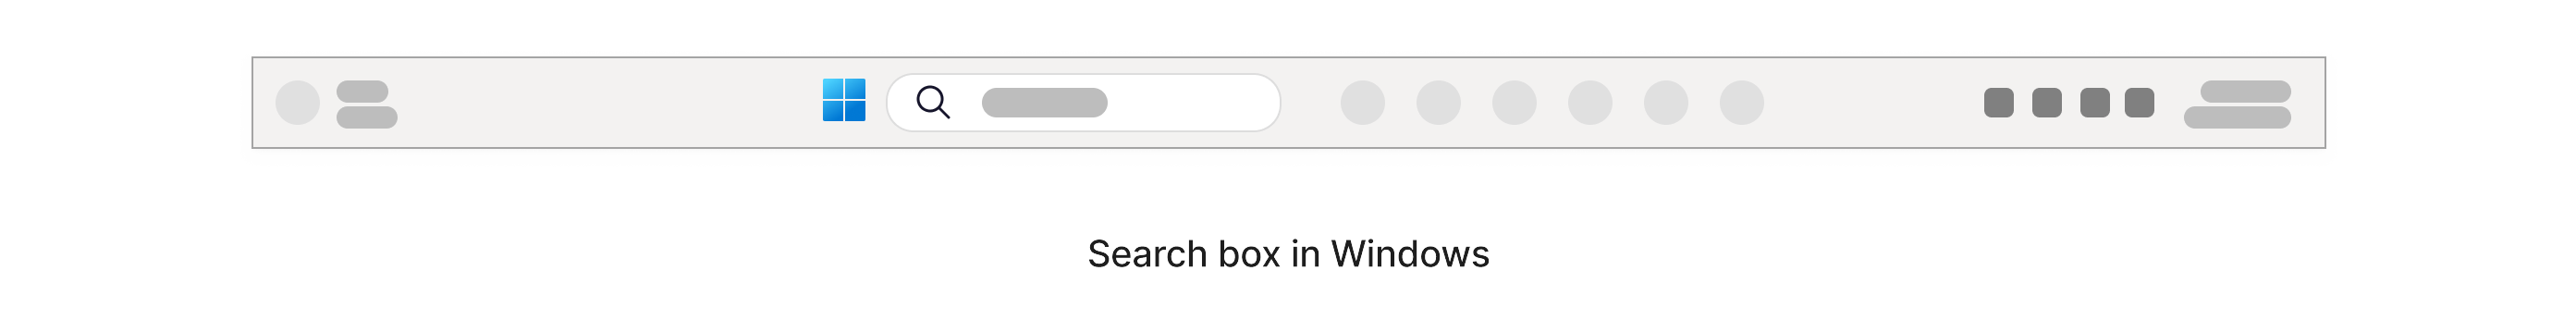 Vyhledávací pole s ikonou lupy, která se nachází na hlavním panelu Windows v dolní části obrazovky.